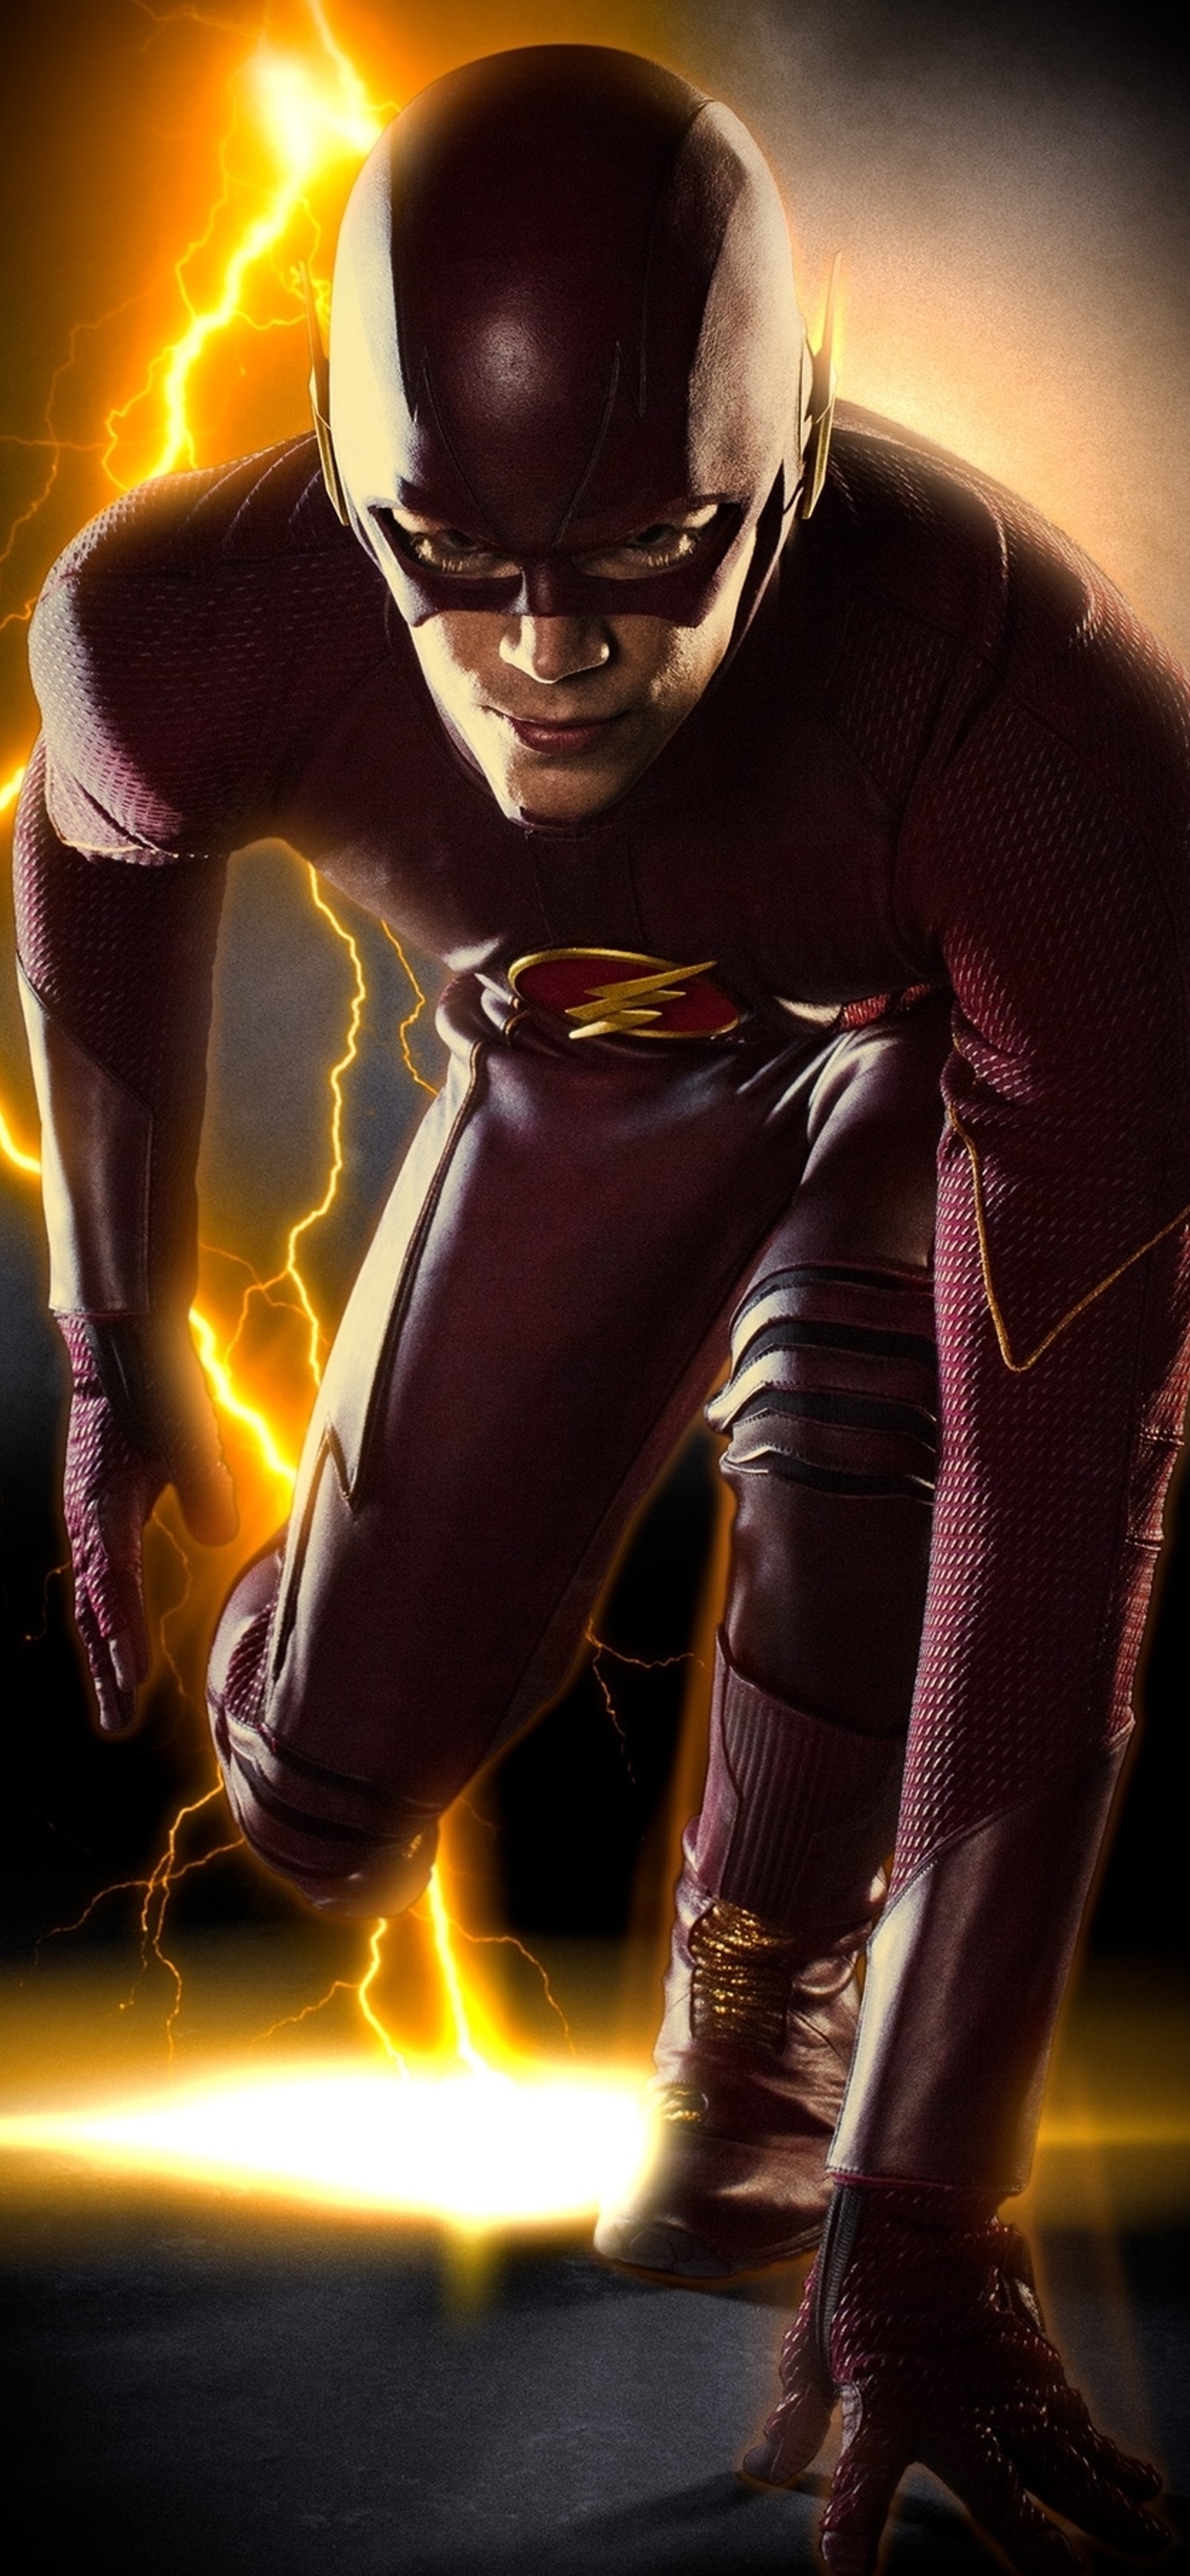 DC动漫最快的男人“闪电侠”帅气海报手机壁纸